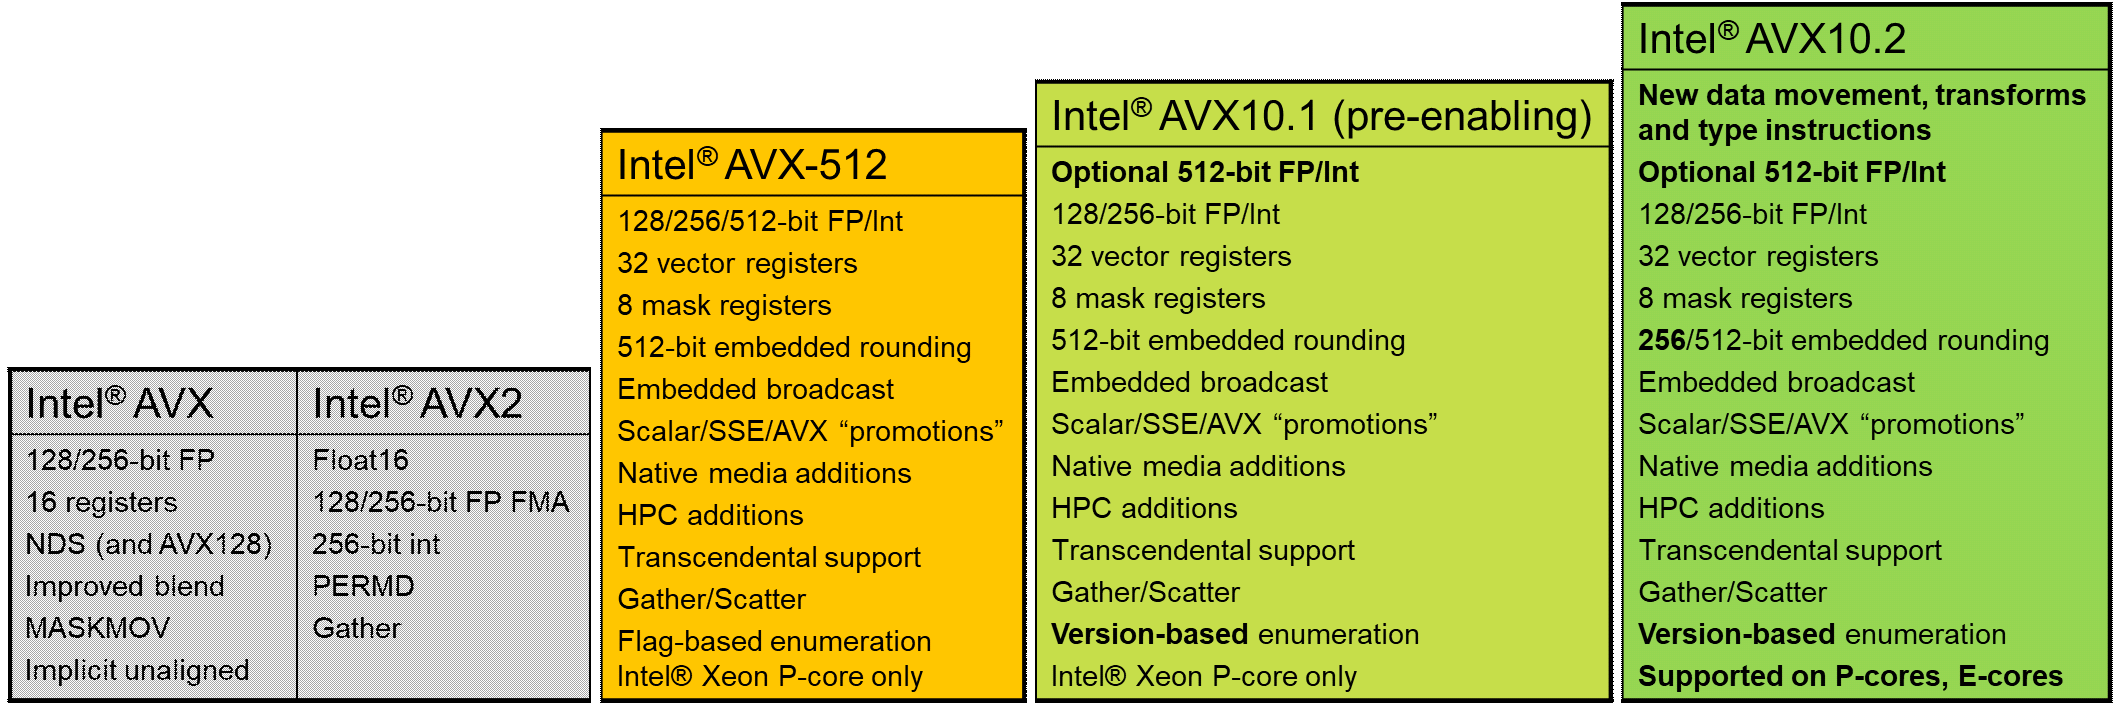 Intel AVX10